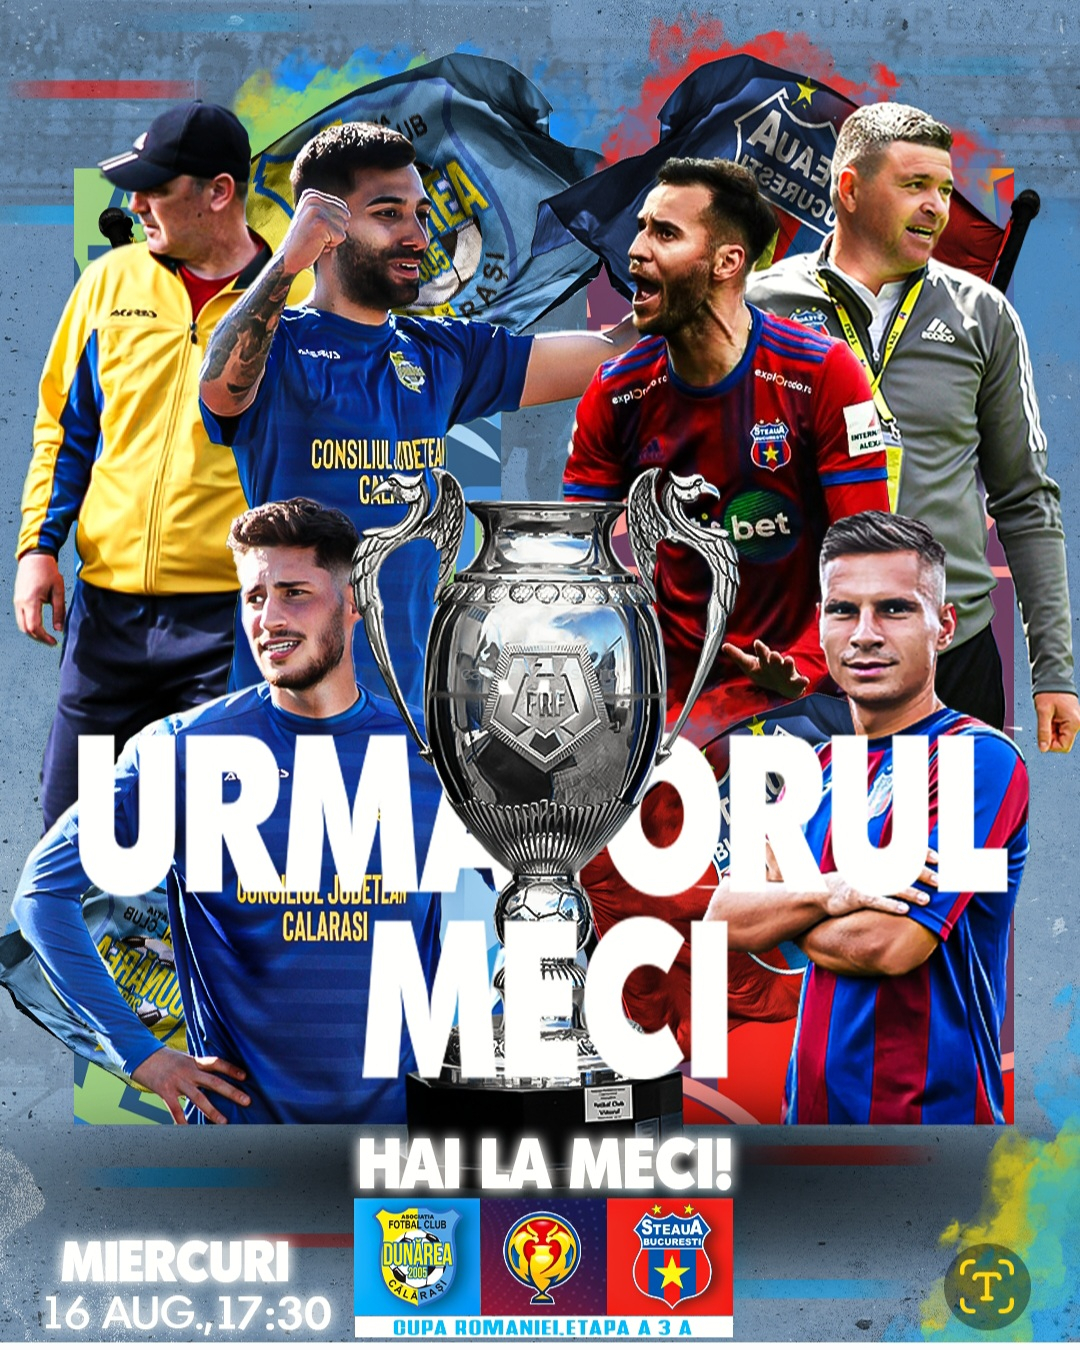 CSA Steaua Bucureşti vs Universitatea Cluj: Live Score, Stream and H2H  results 9/28/2023. Preview match CSA Steaua Bucureşti vs Universitatea  Cluj, team, start time.